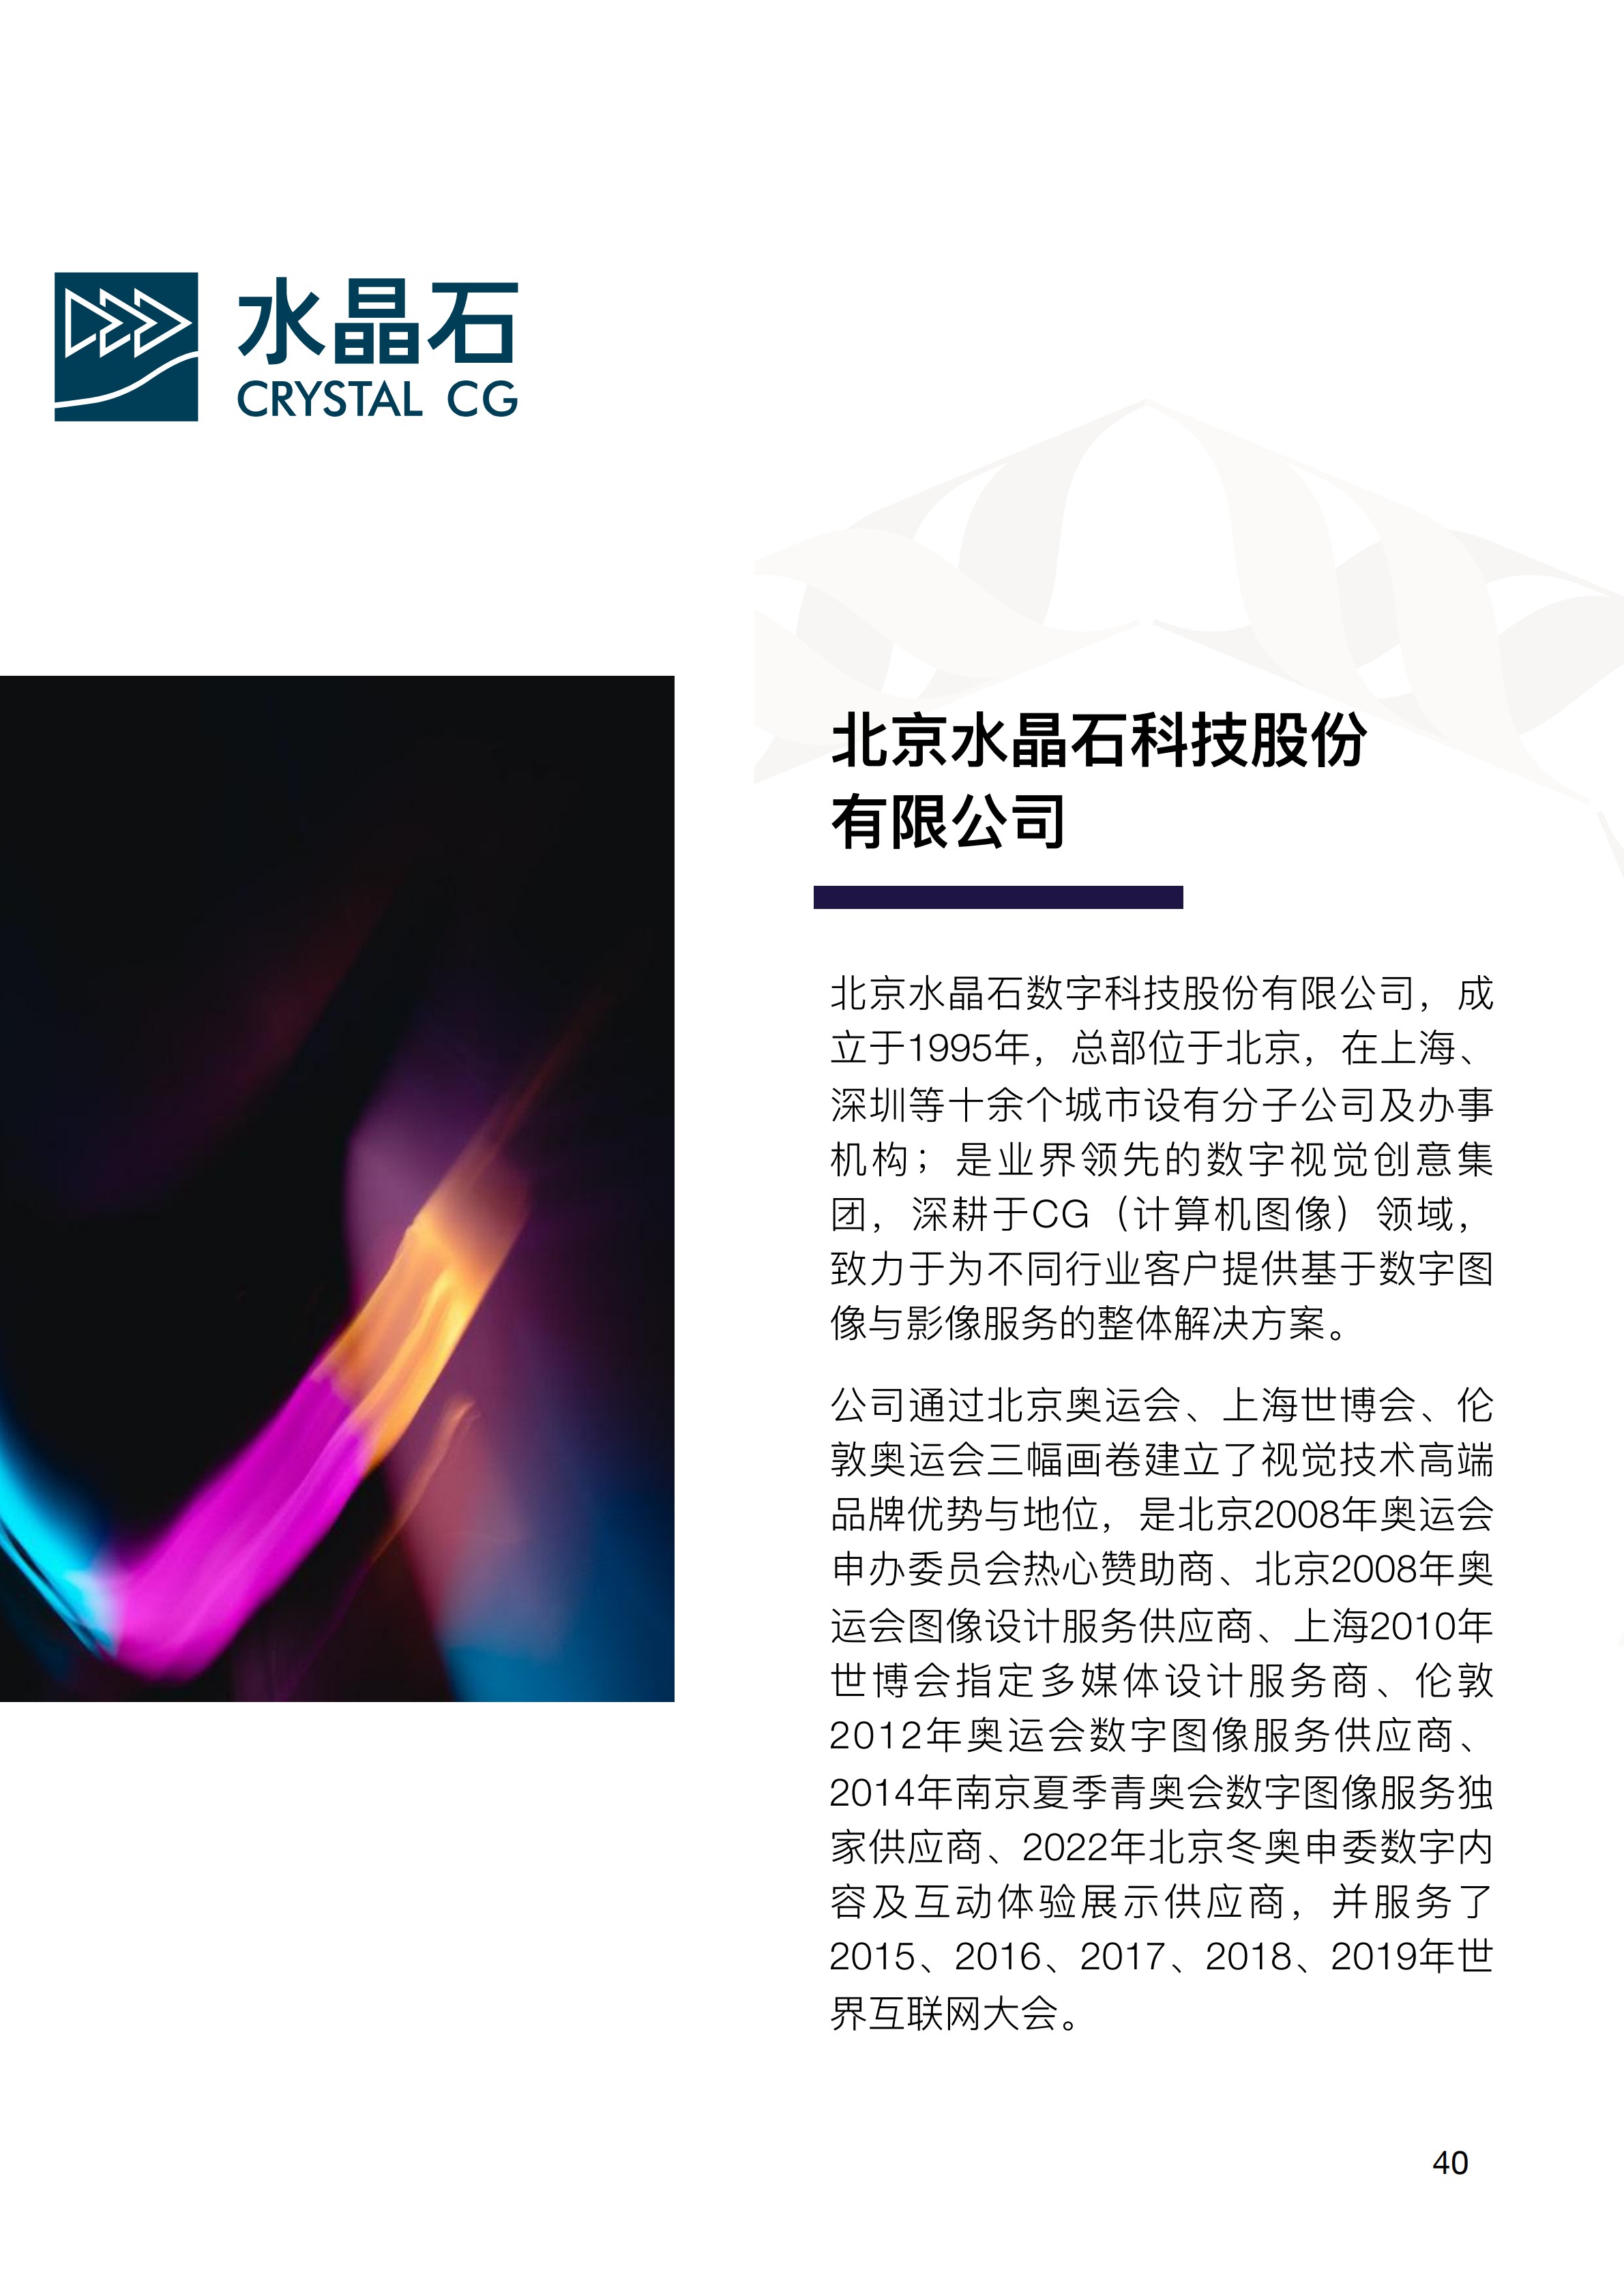 中关村出海产品手册(Chinese Simplified) 2020 Zhongguancun Product Handbook v1.0_43.jpg